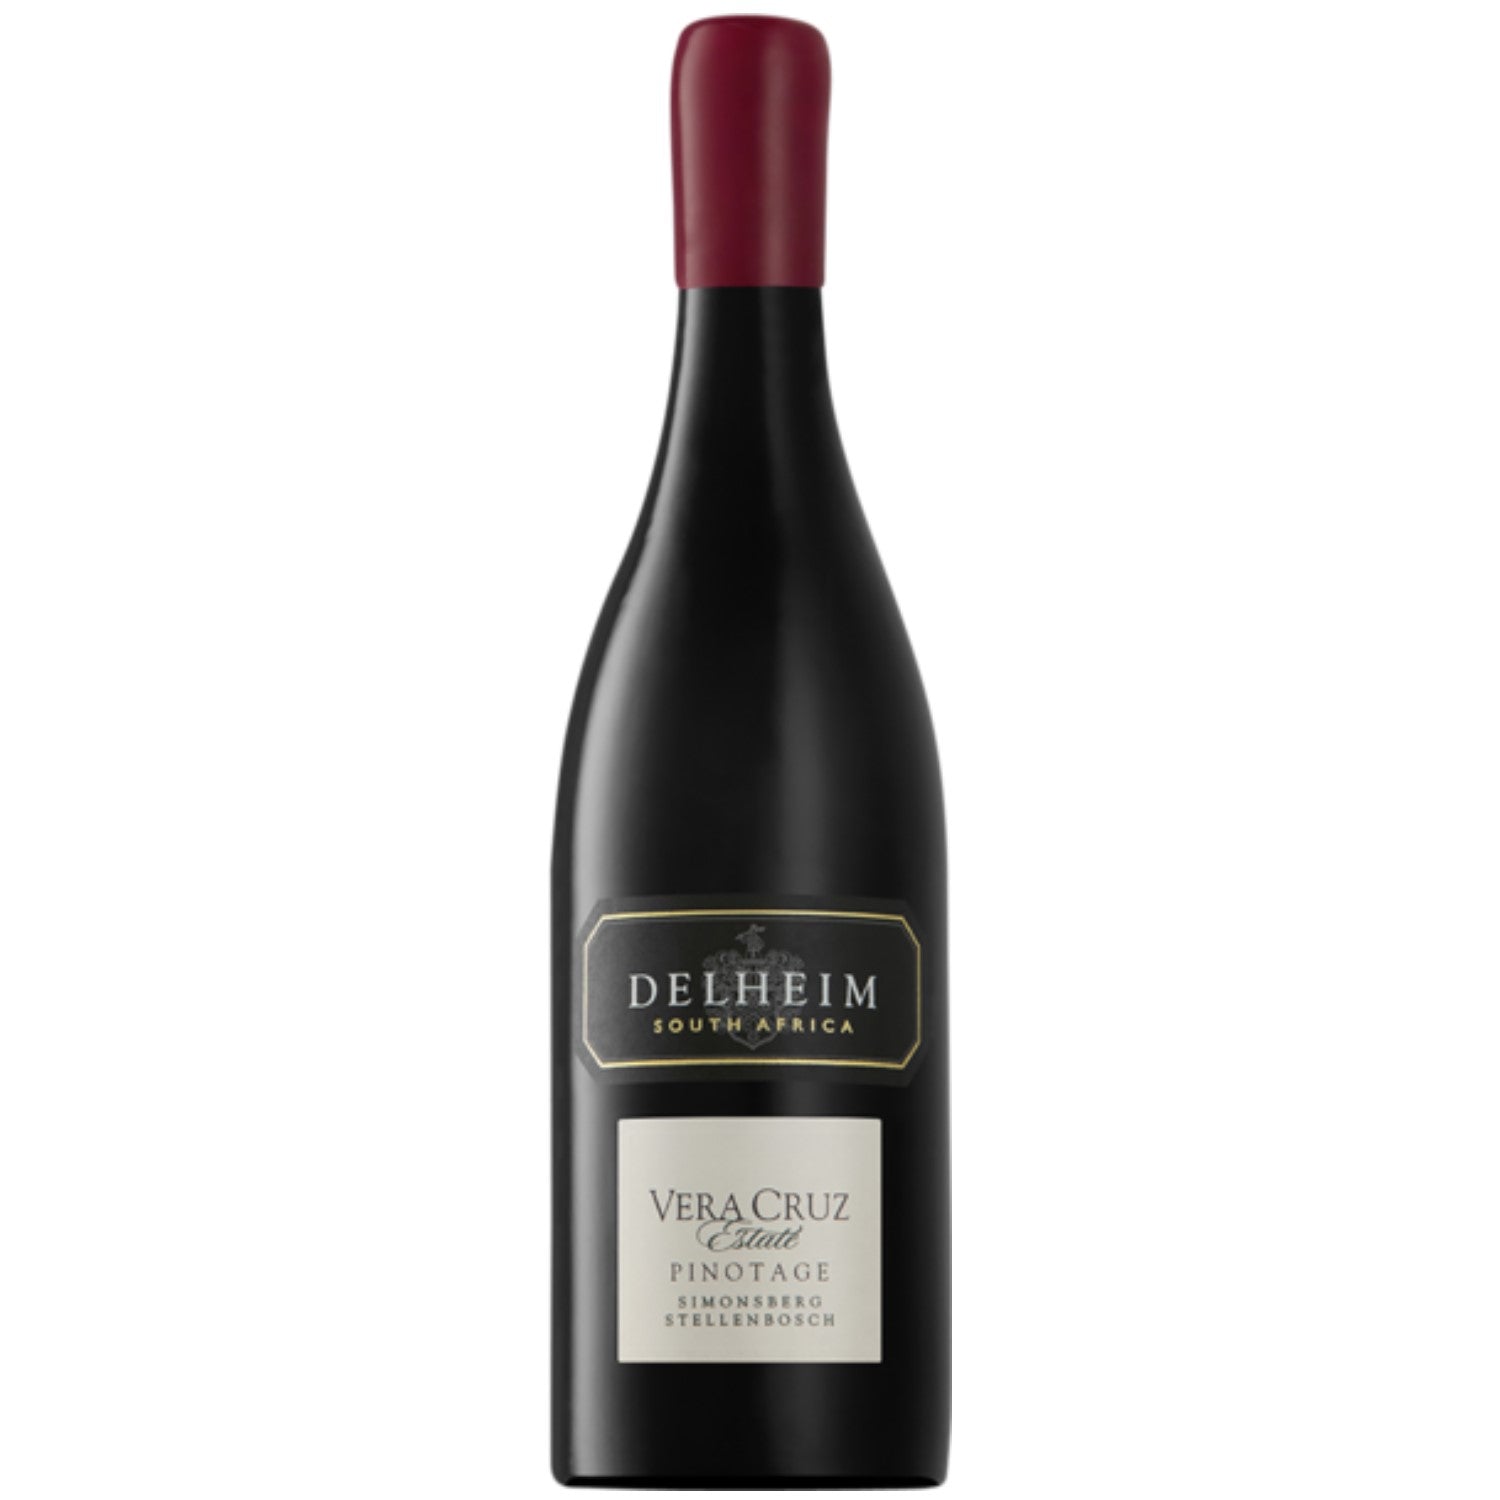 Delheim Vera Cruz Pinotage Simonsberg-Stellenbosch Rotwein Wein trocken Südafrika (6 x 0.75l) - Versanel -